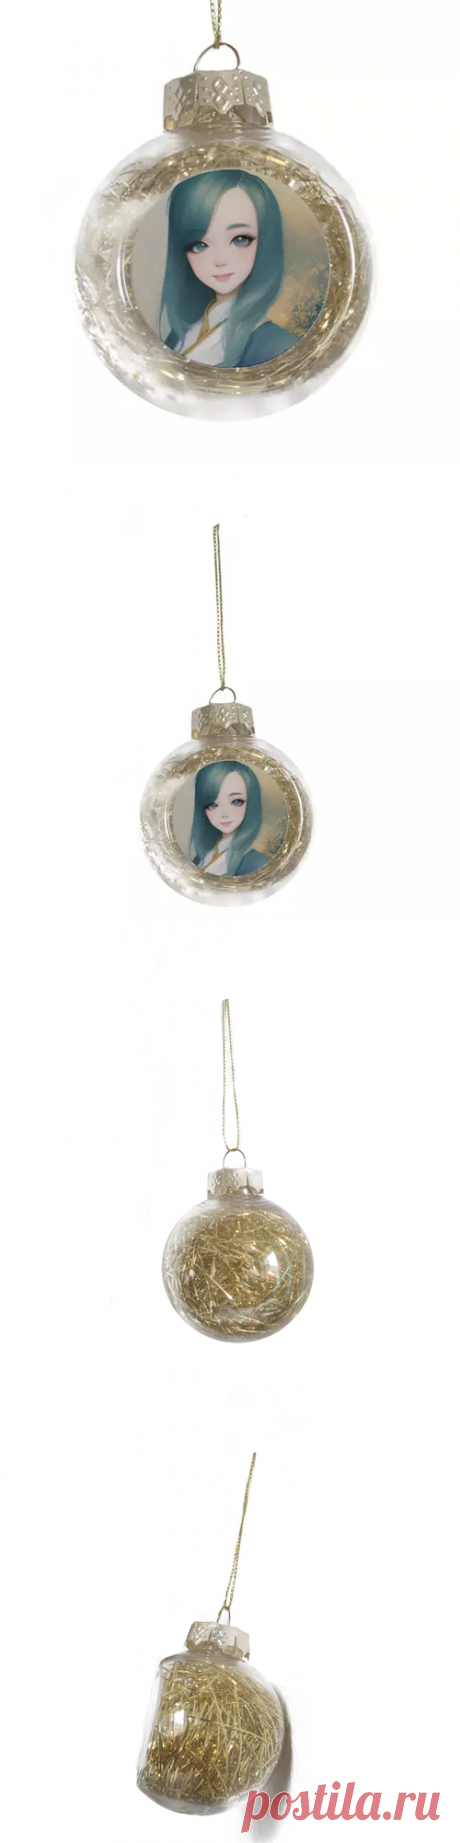 Ёлочная игрушка Девушка с голубыми волосами #4798777 в Москве, цена 450 руб.: купить ёлочное украшение с принтом от Anstey в интернет-магазине